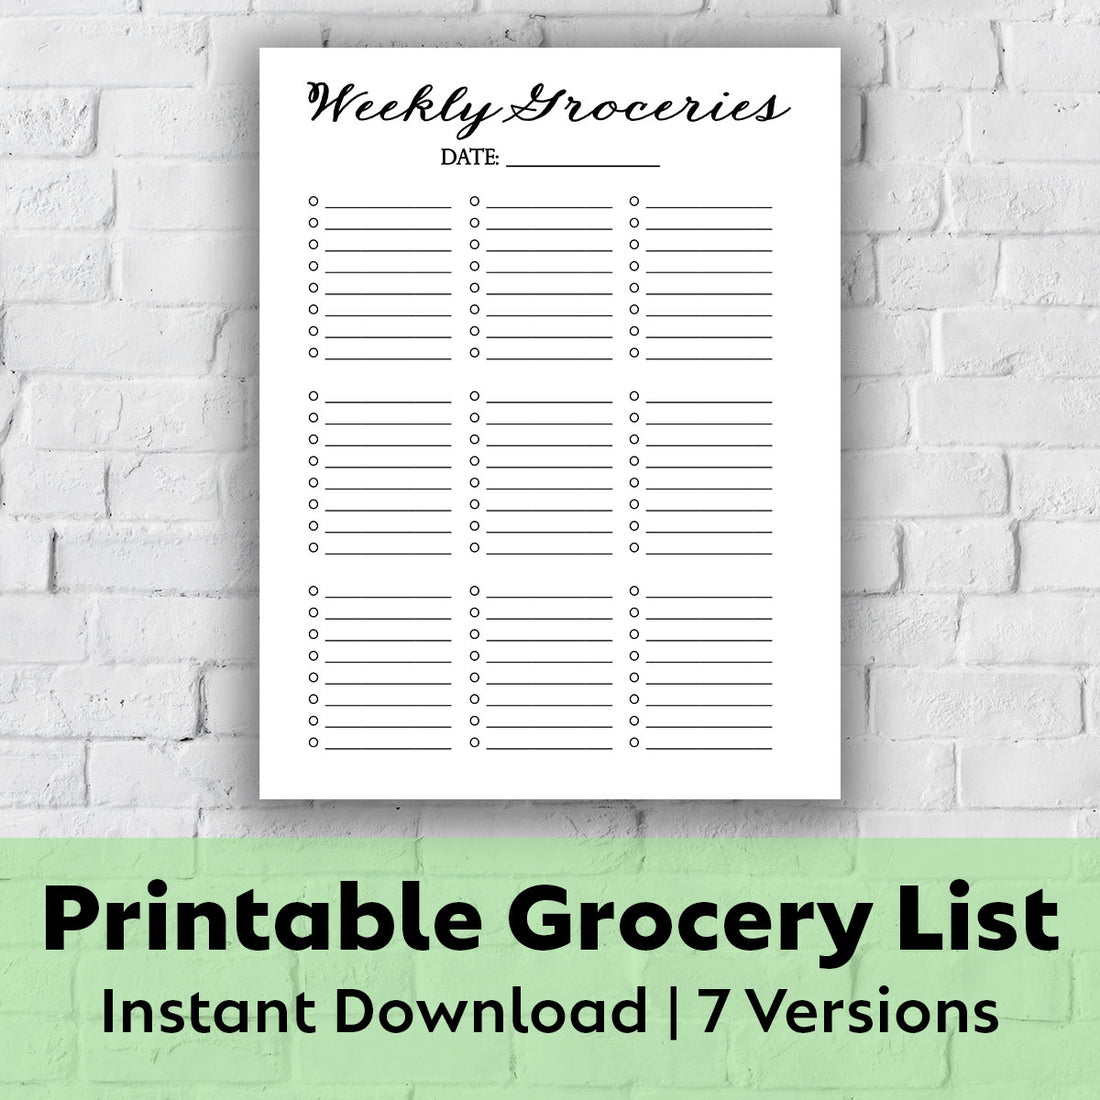 Printable Grocery List - Weekly Groceries